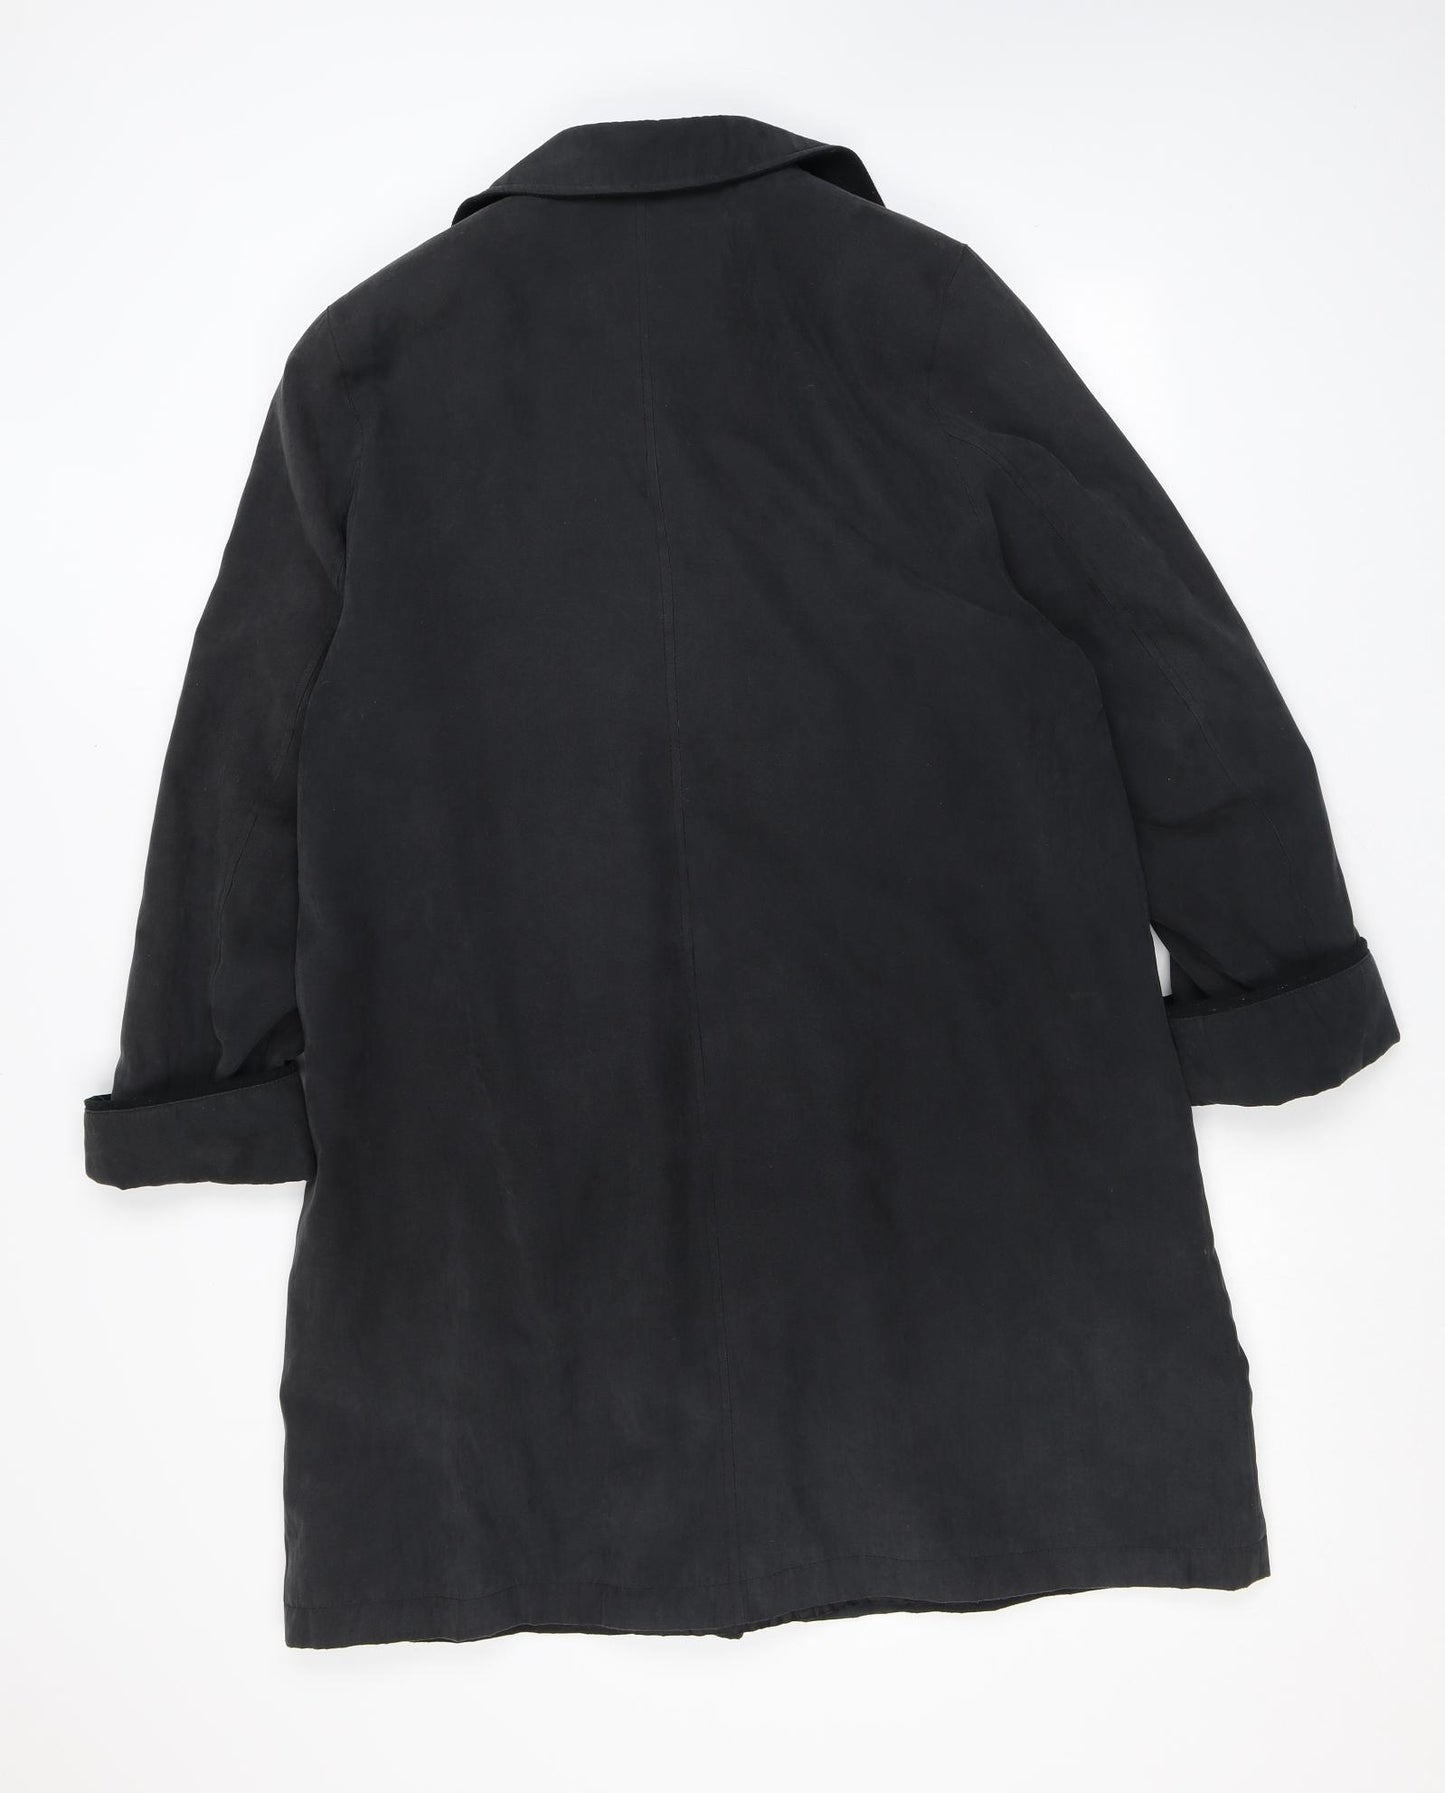 Klass Womens Black Pea Coat Coat Size 12 Button